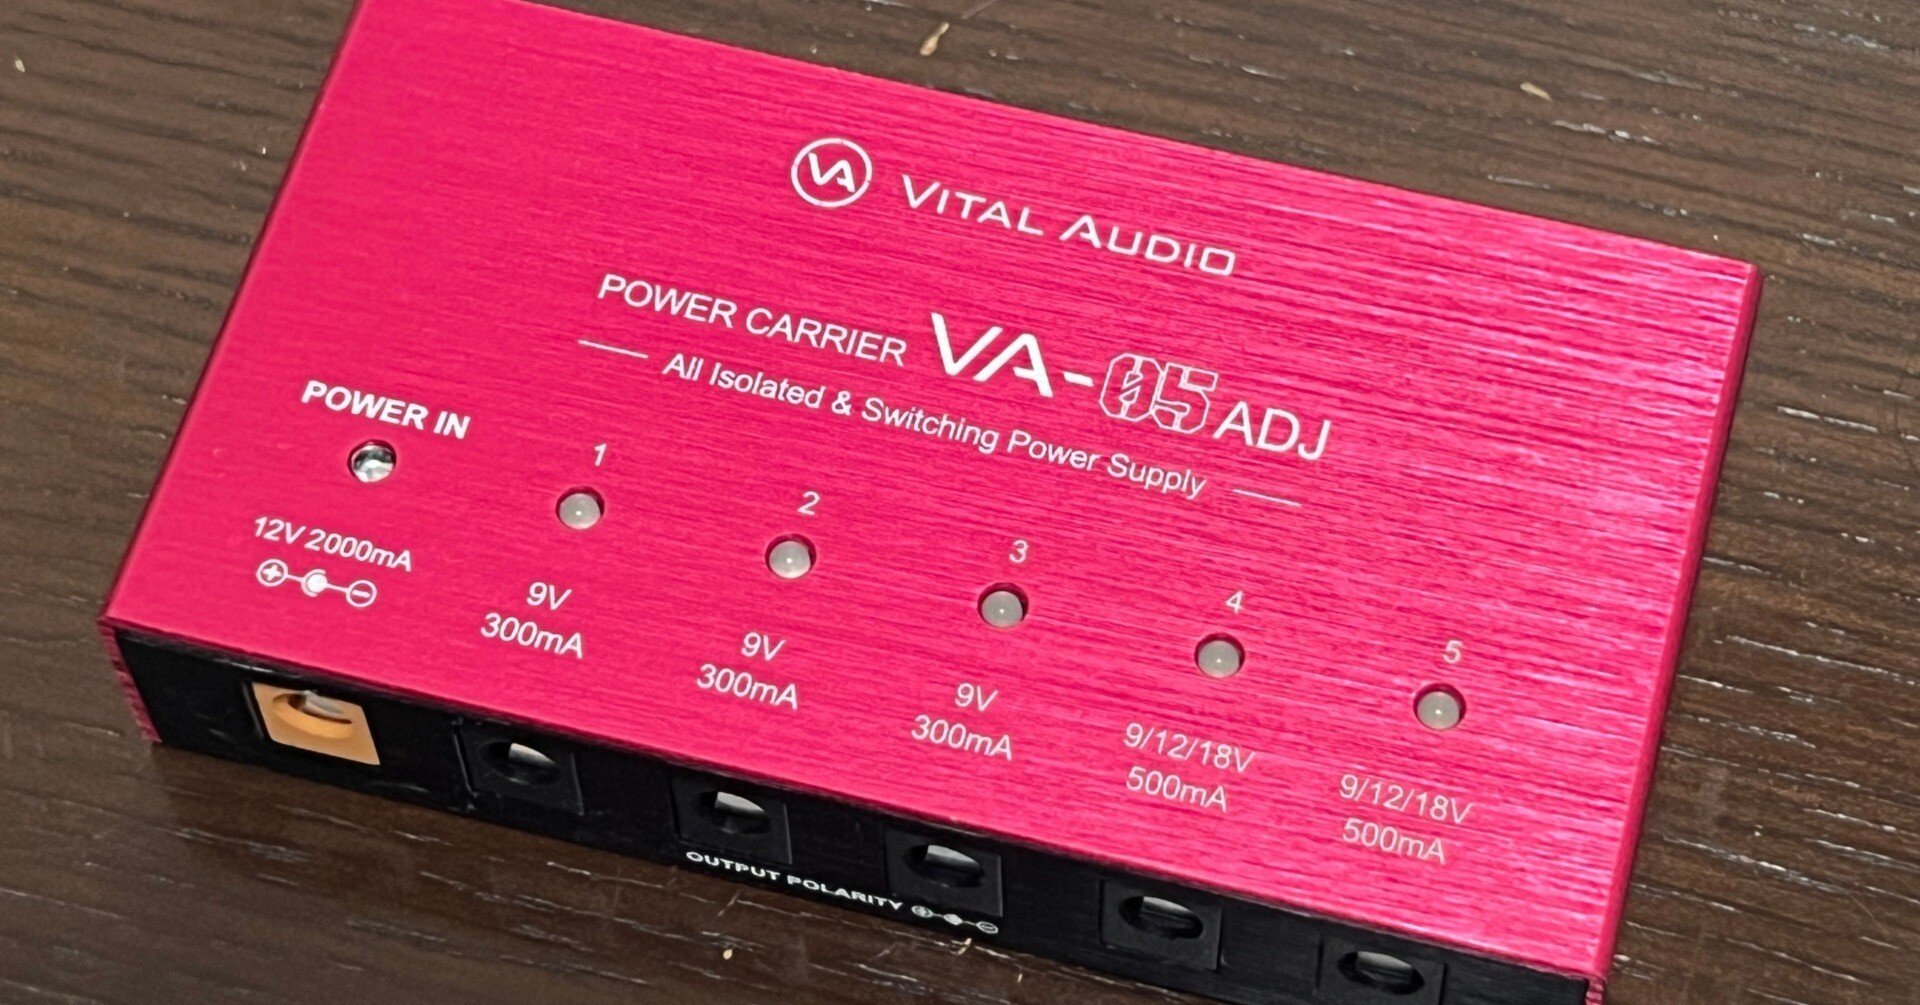 [機材レビュー]VITAL AUDIO POWER CARRIER VA-05 ADJ 